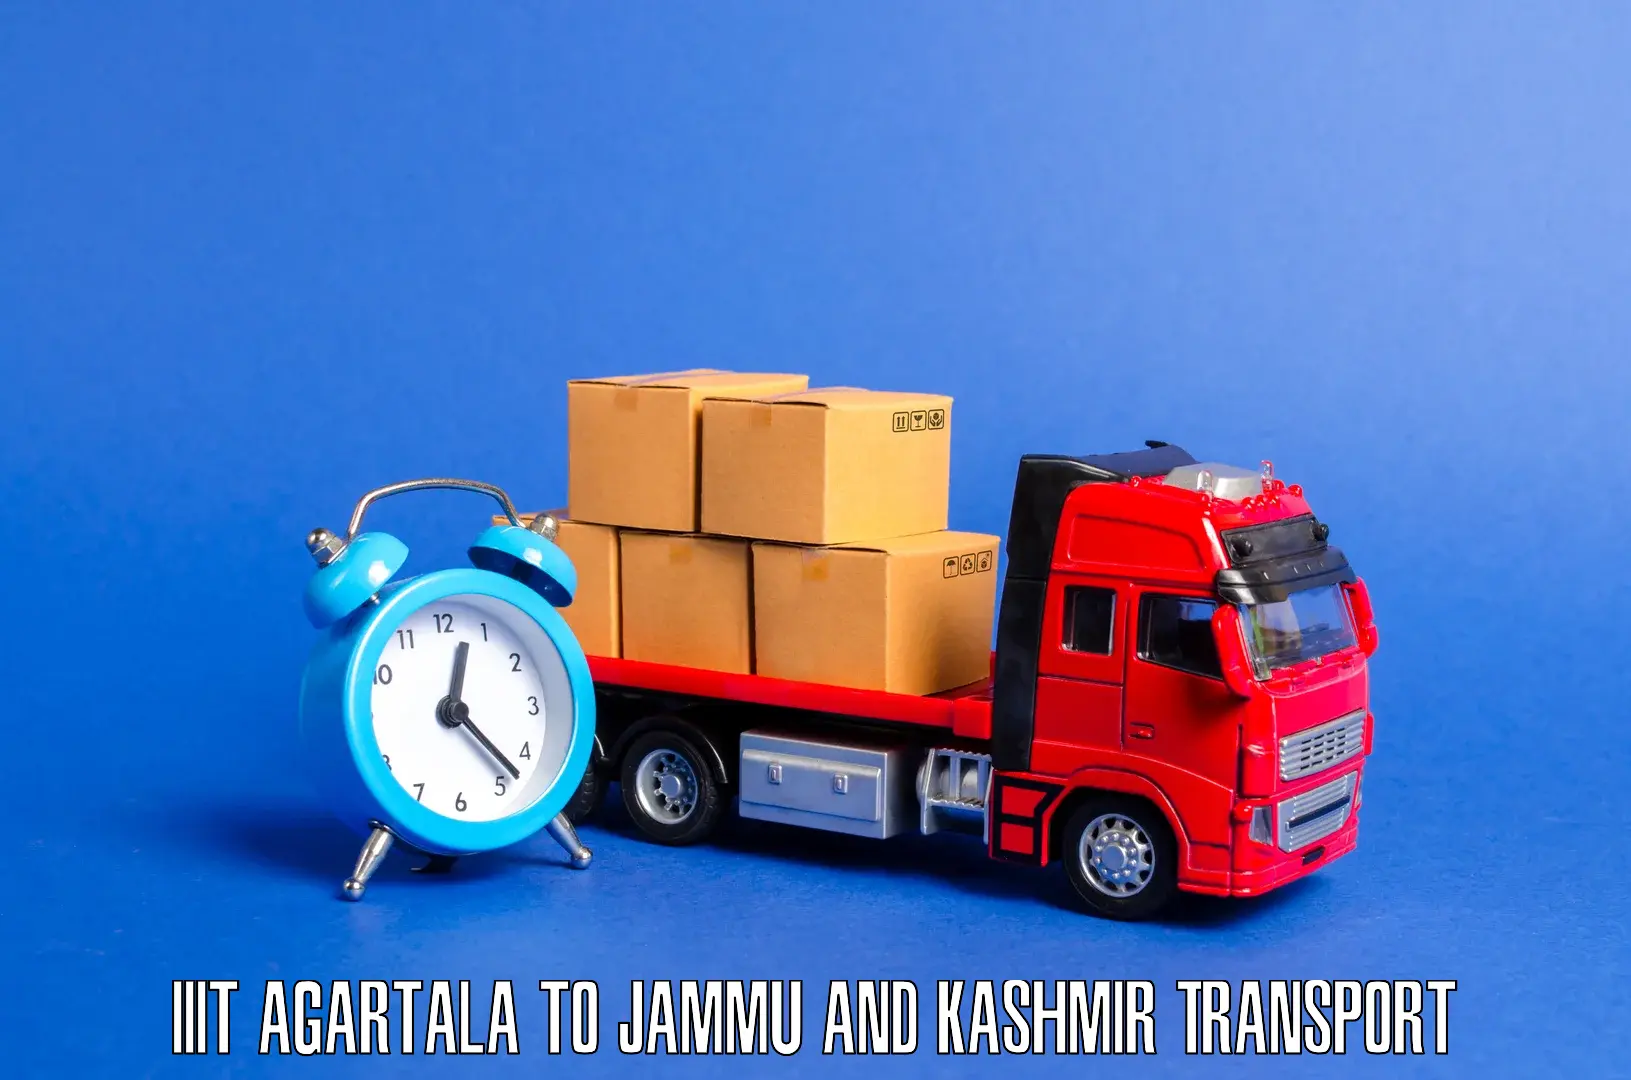 Cargo transportation services IIIT Agartala to Kishtwar